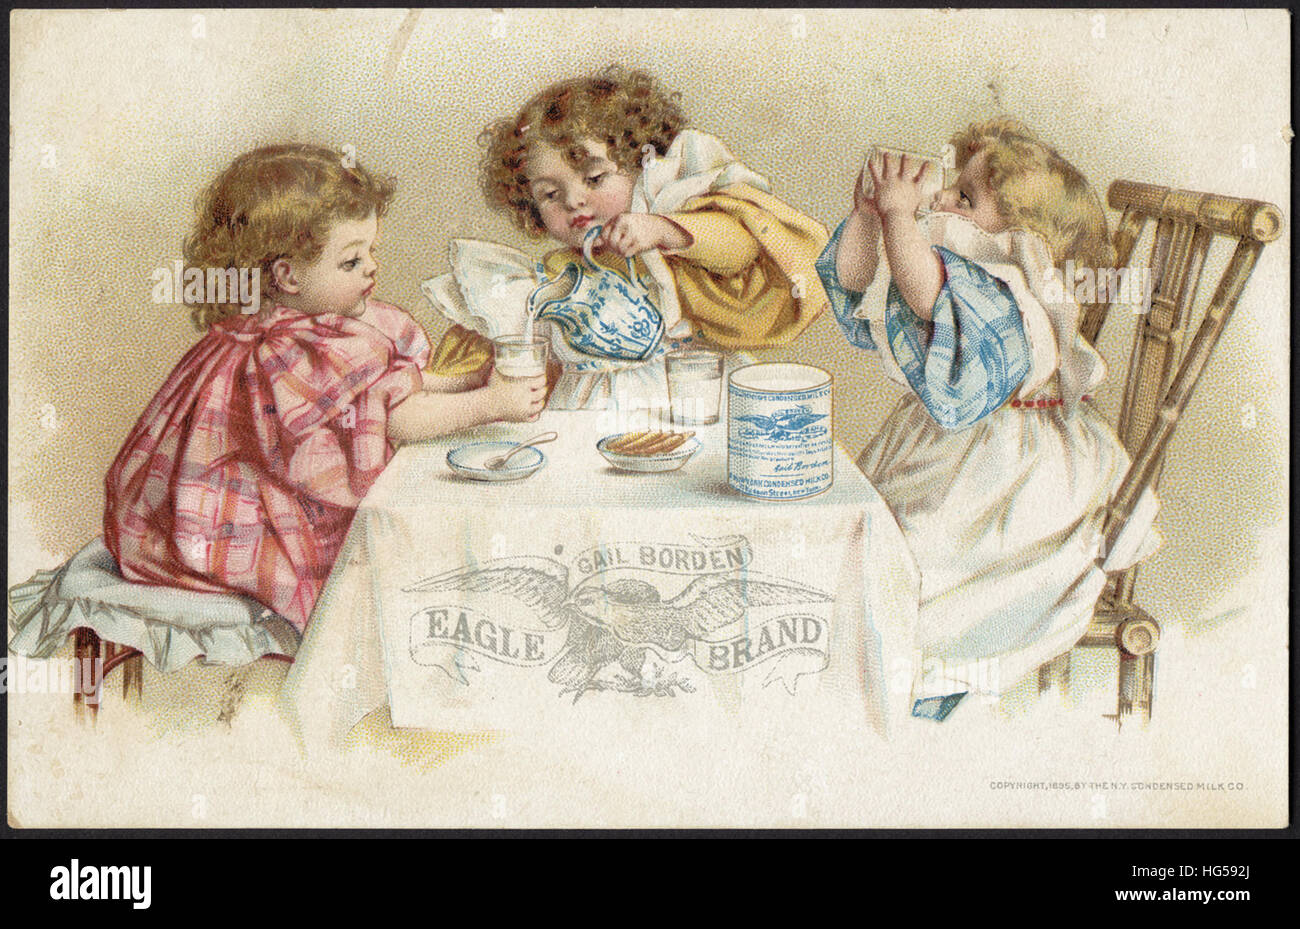 Il commercio di bevande carte - Gail Borden Eagle marca di latte condensato Foto Stock